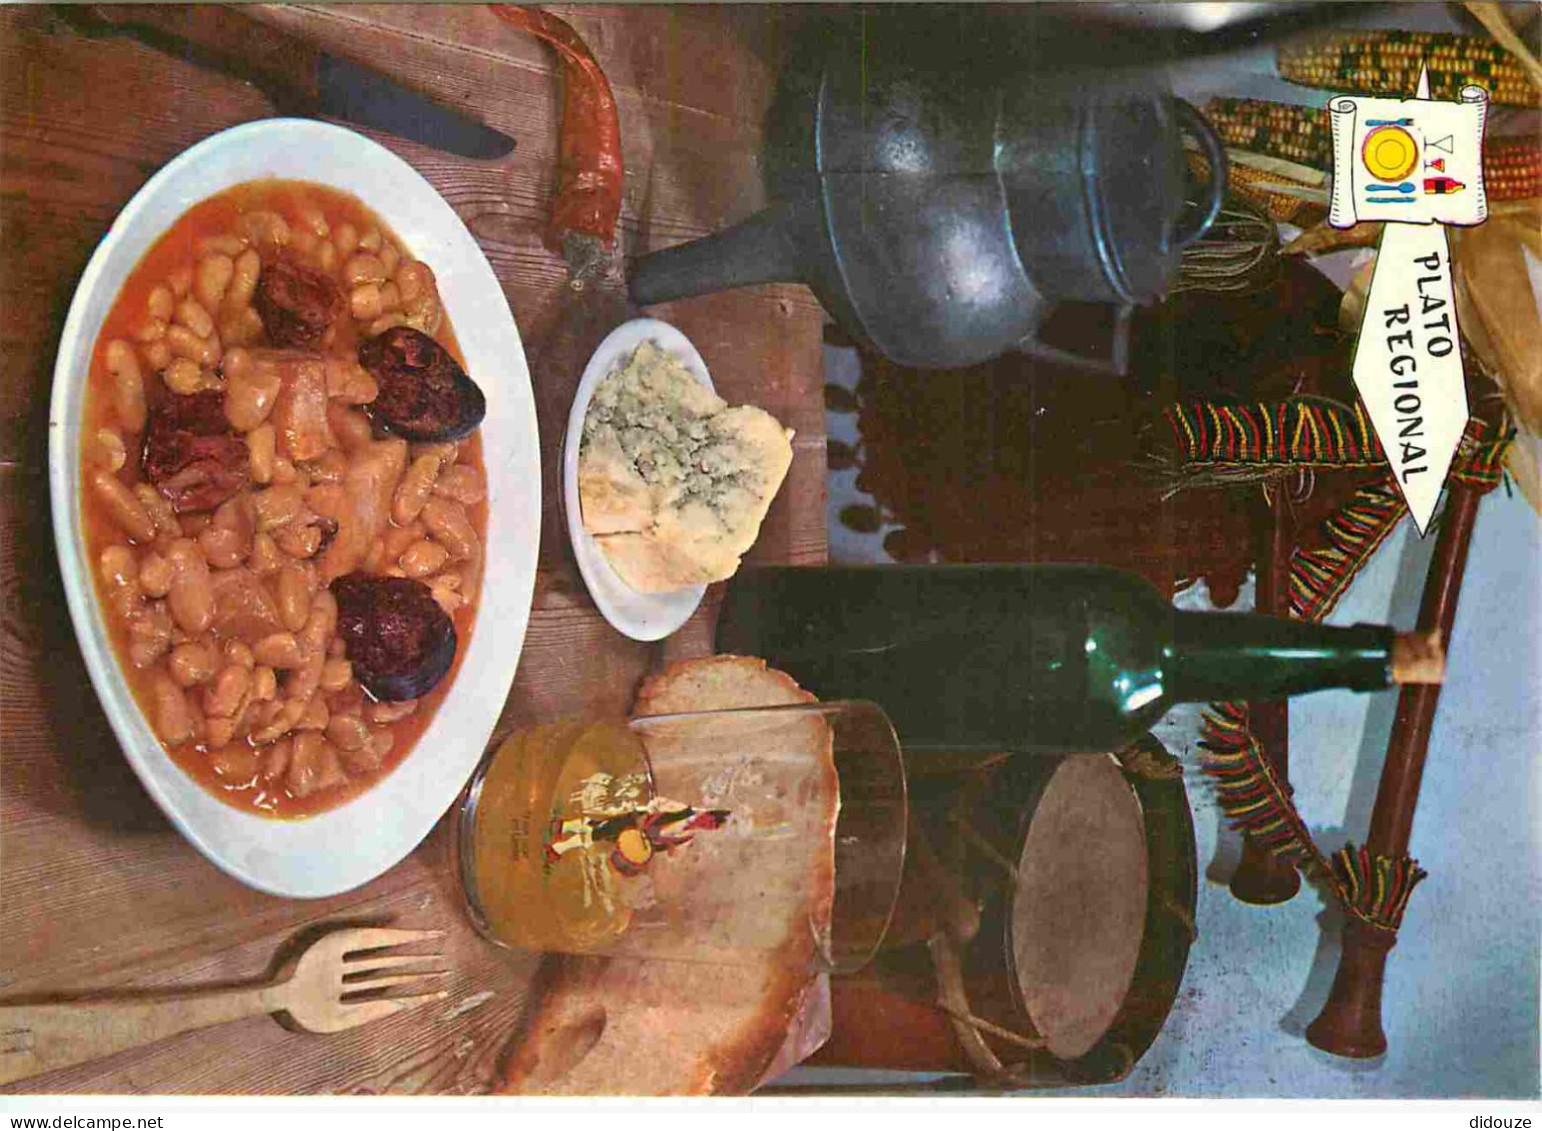 Recettes De Cuisine - Fabada Asturiana - Gastronomie - CPM - Voir Scans Recto-Verso - Küchenrezepte